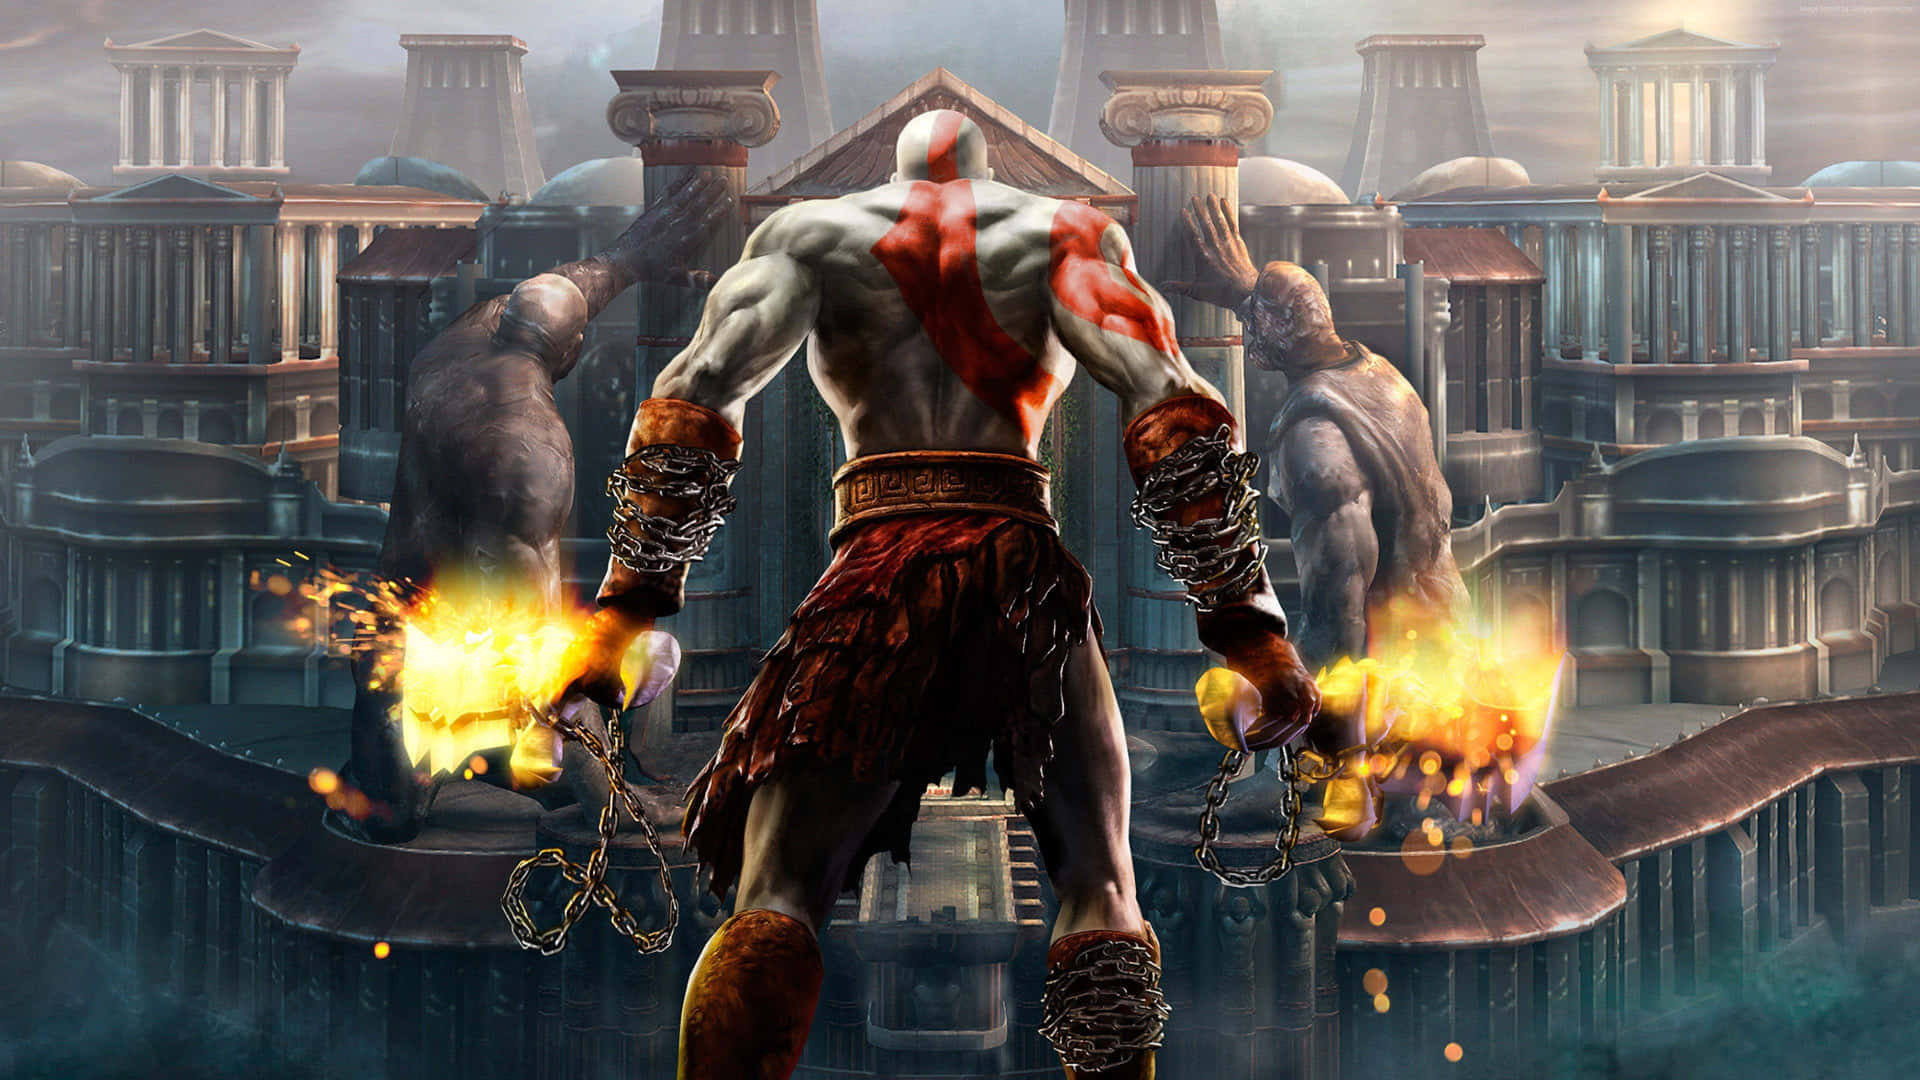 Kratos, the formidable warrior in 'God of War III' Wallpaper